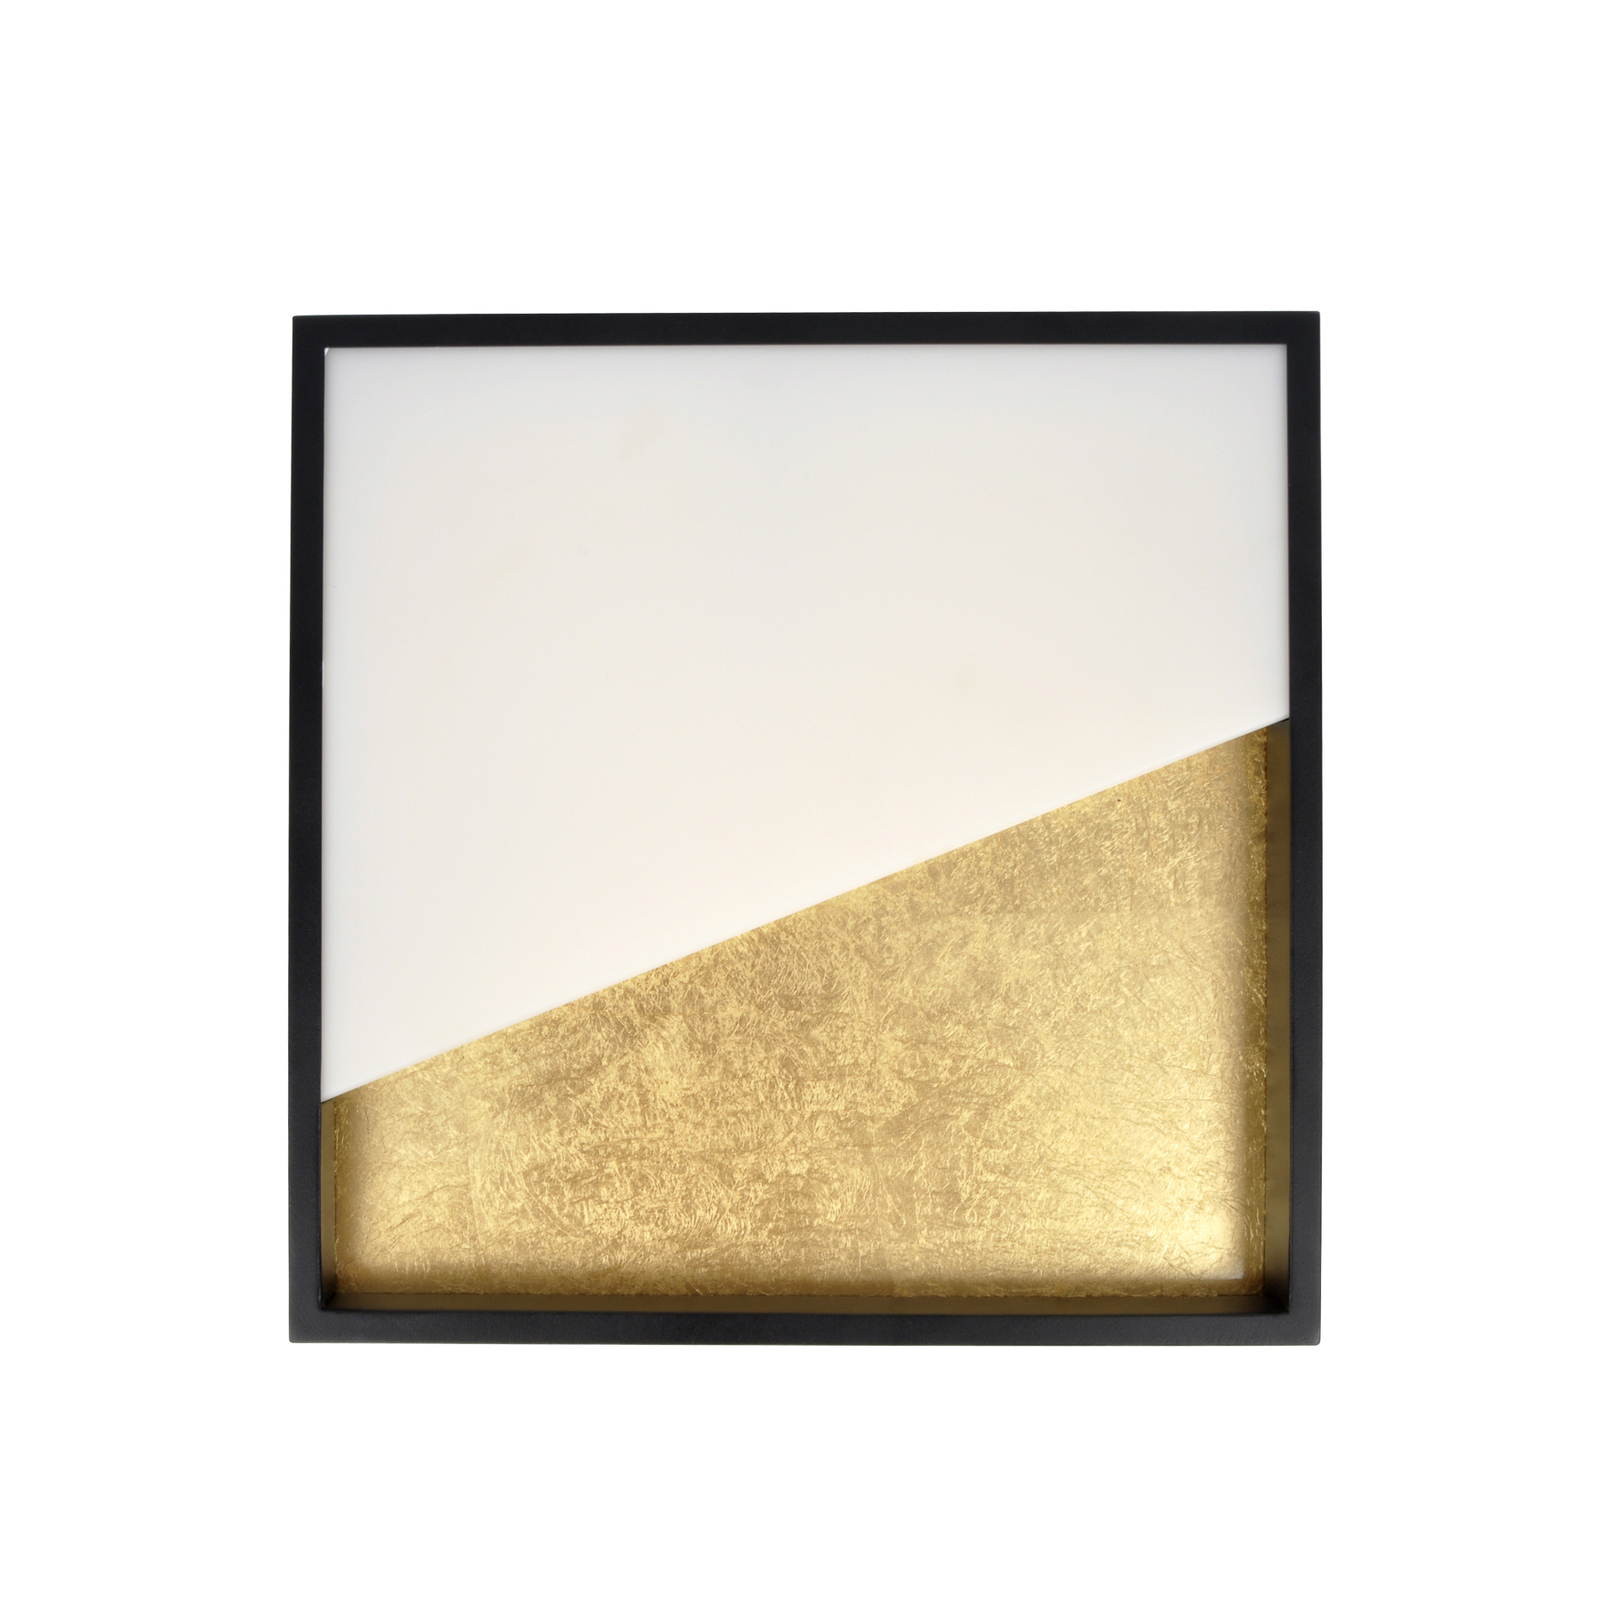 Nástenné svietidlo LED Vista, zlatá/čierna farba, 30 x 30 cm